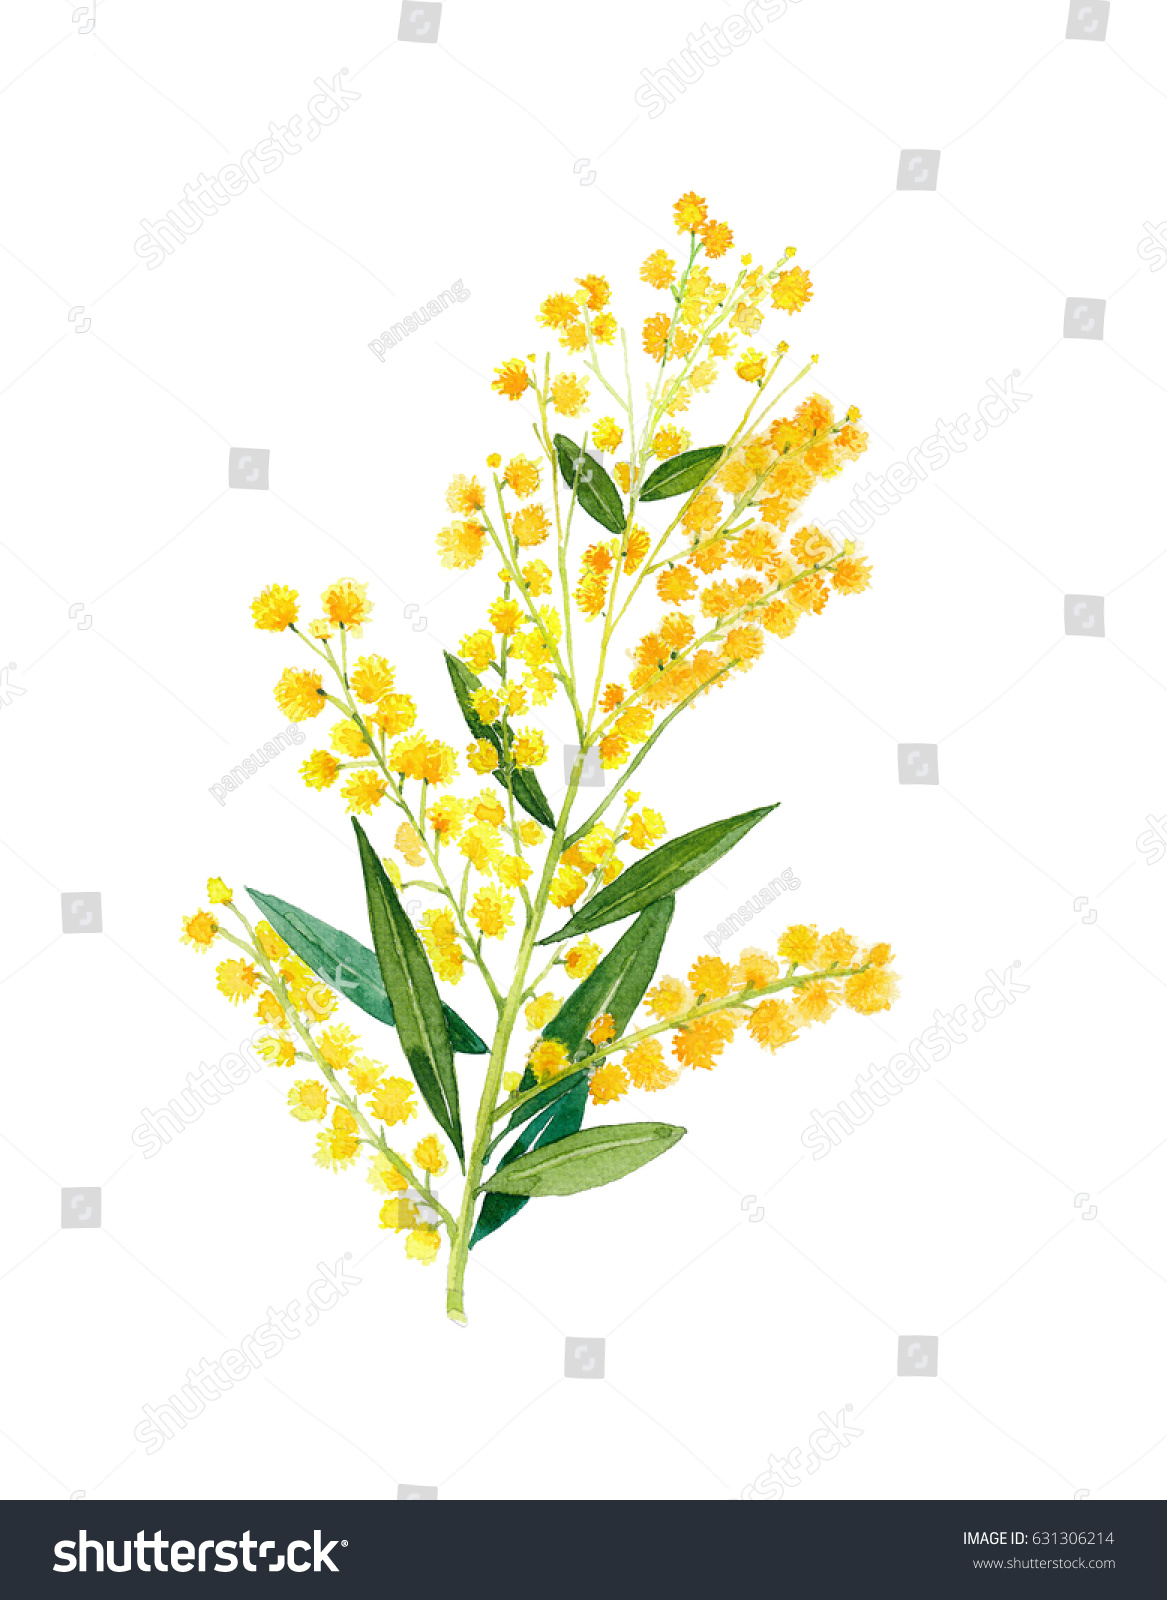 ゴールデン ワトル アカシア ピクナンタ はオーストラリアの国花である のイラスト素材